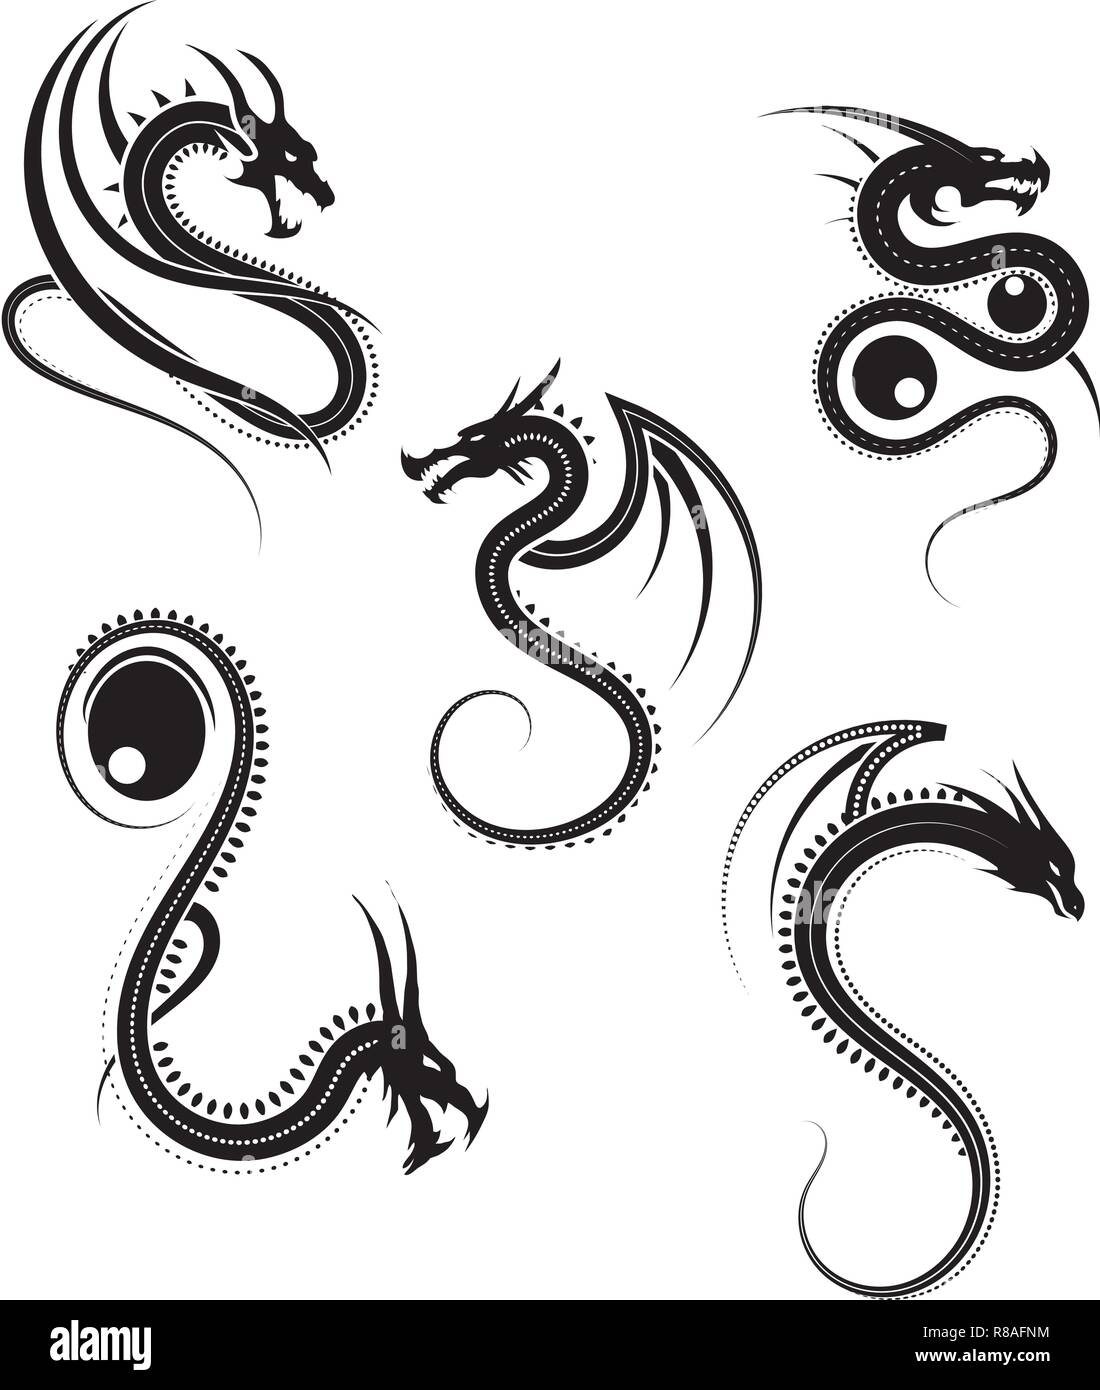 Illustrazione Vettoriale, set di round drago tribale disegni in bianco e nero la grafica Illustrazione Vettoriale